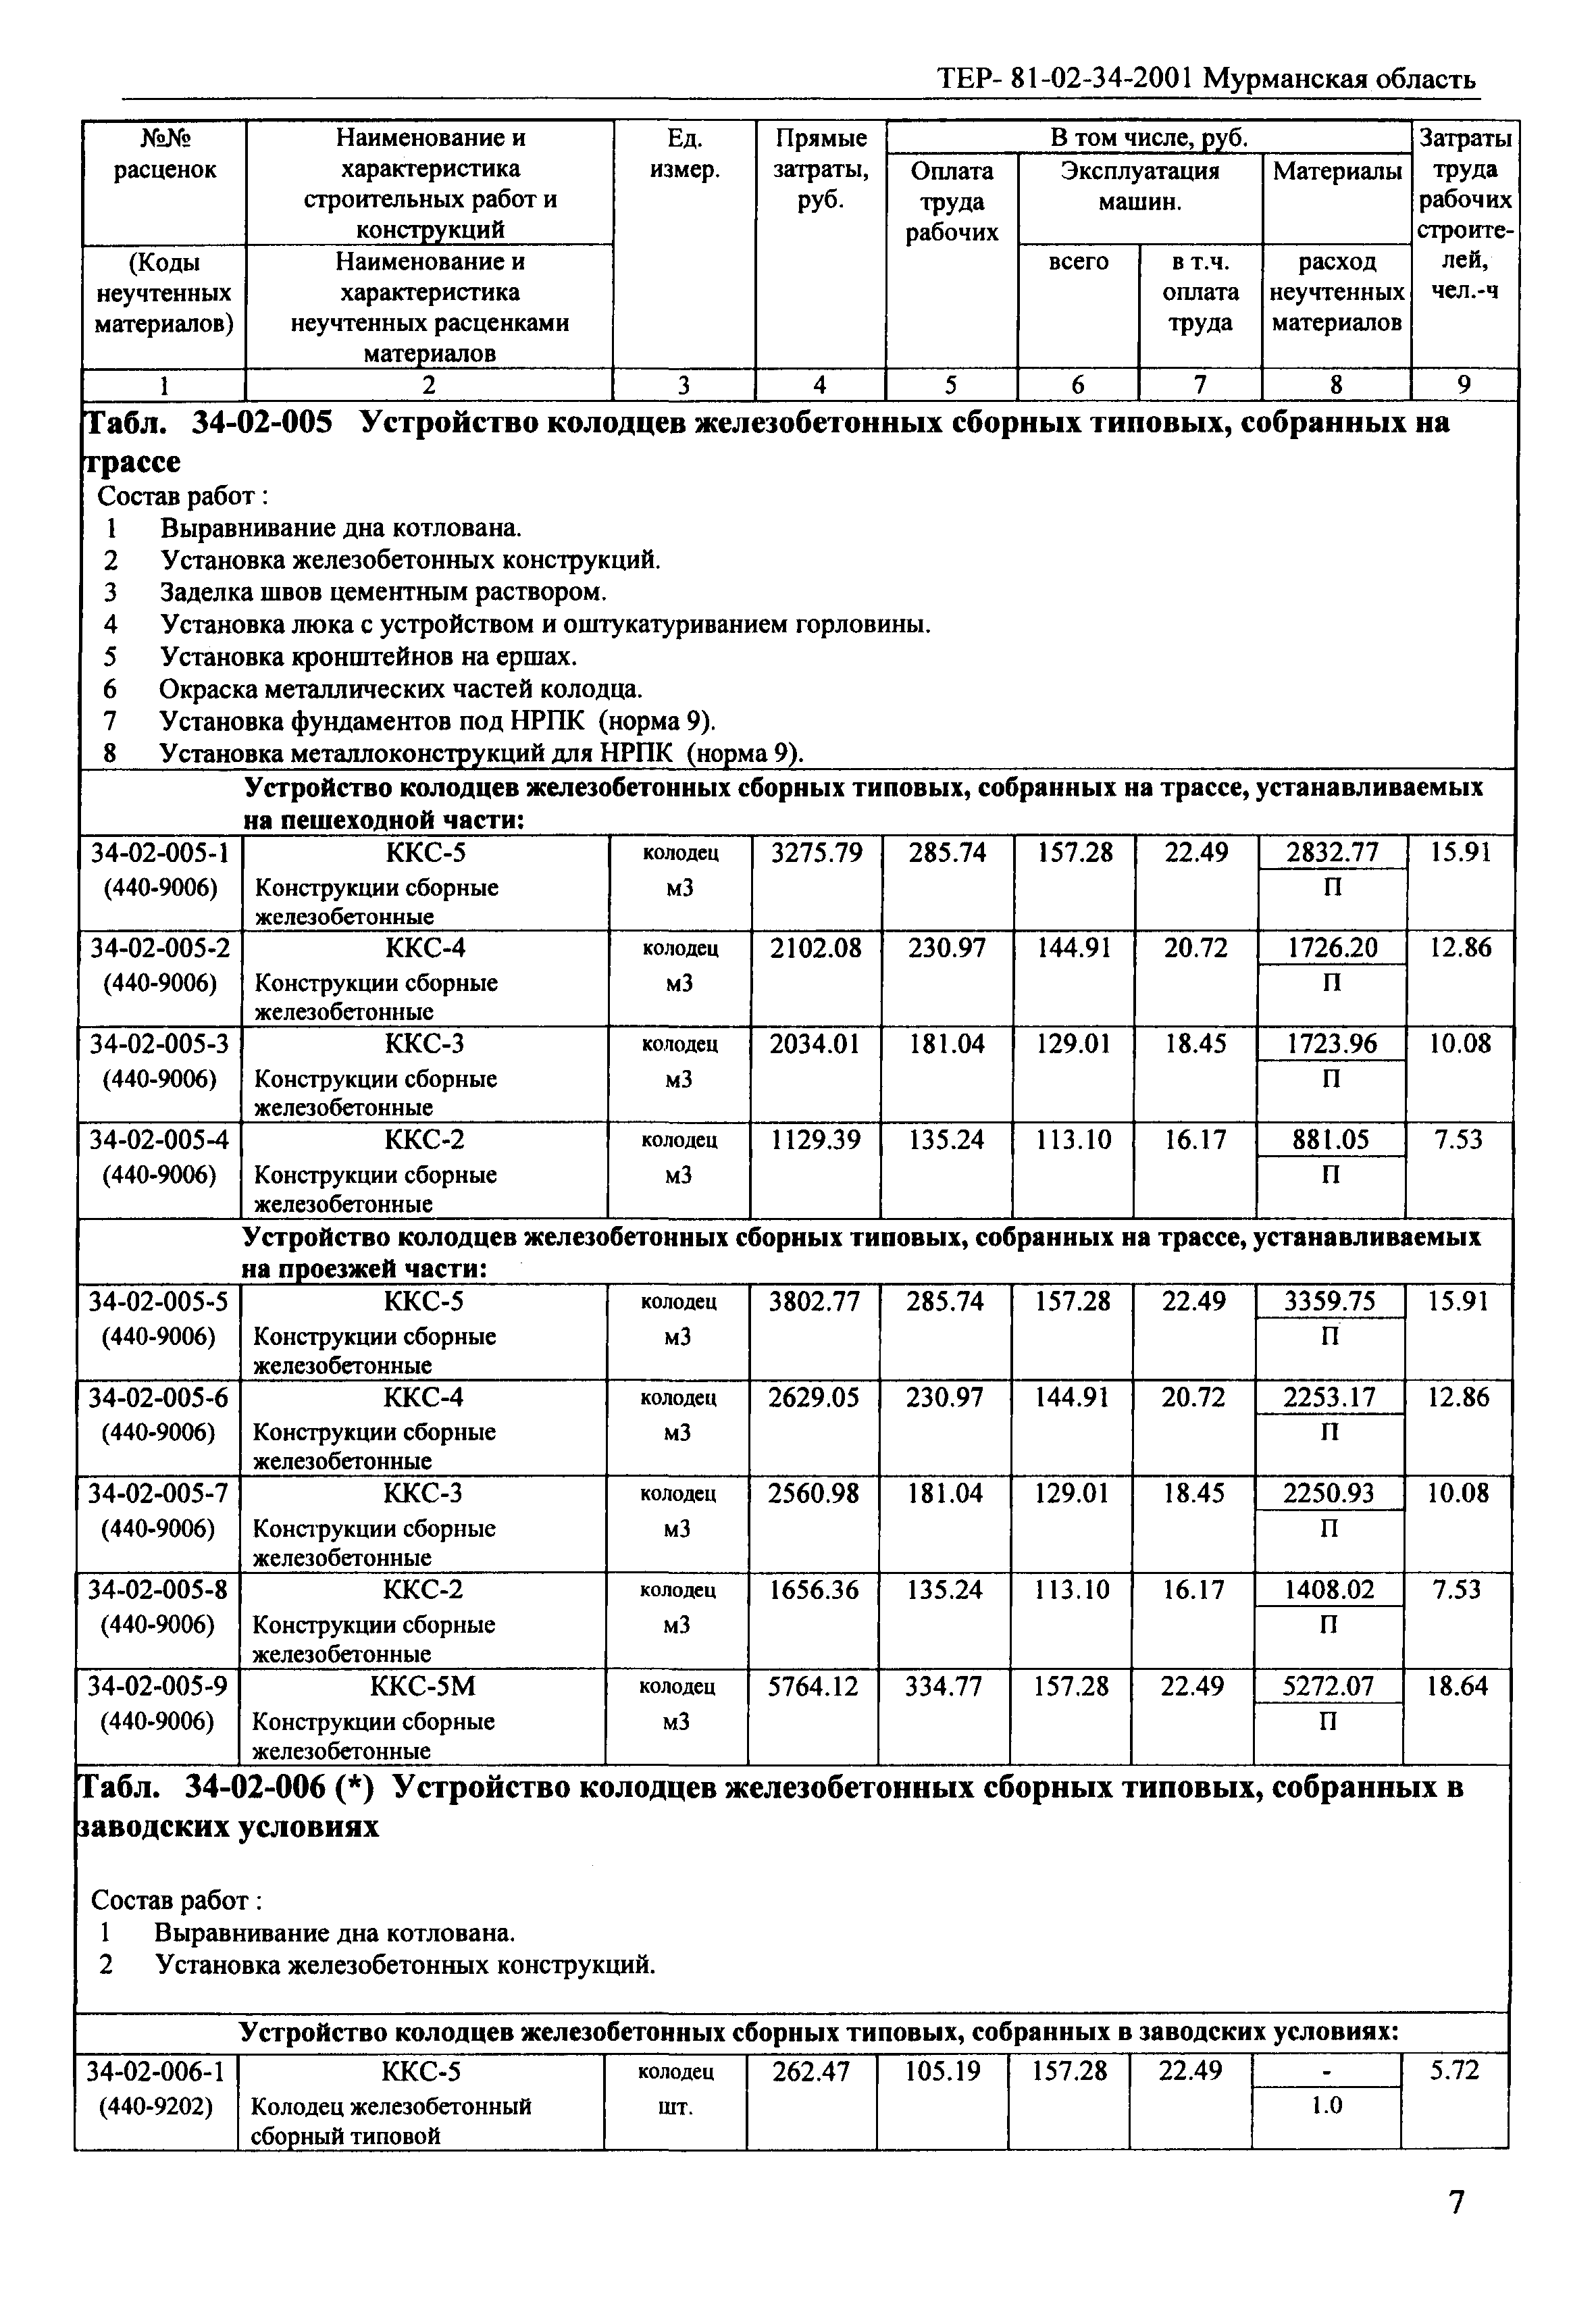 ТЕР Мурманская область 2001-34